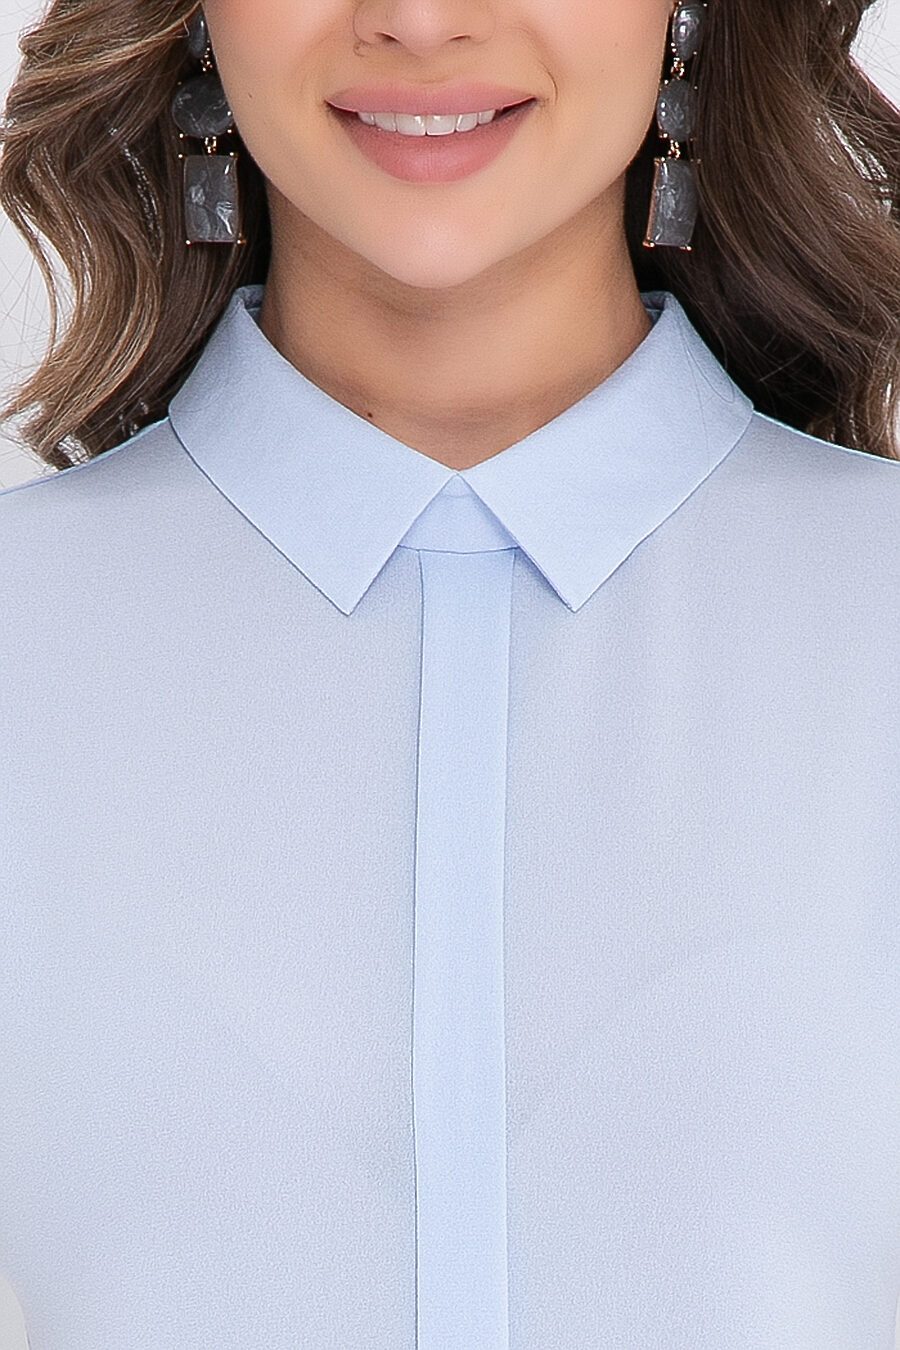 Блуза BELLOVERA (687238), купить в Moyo.moda